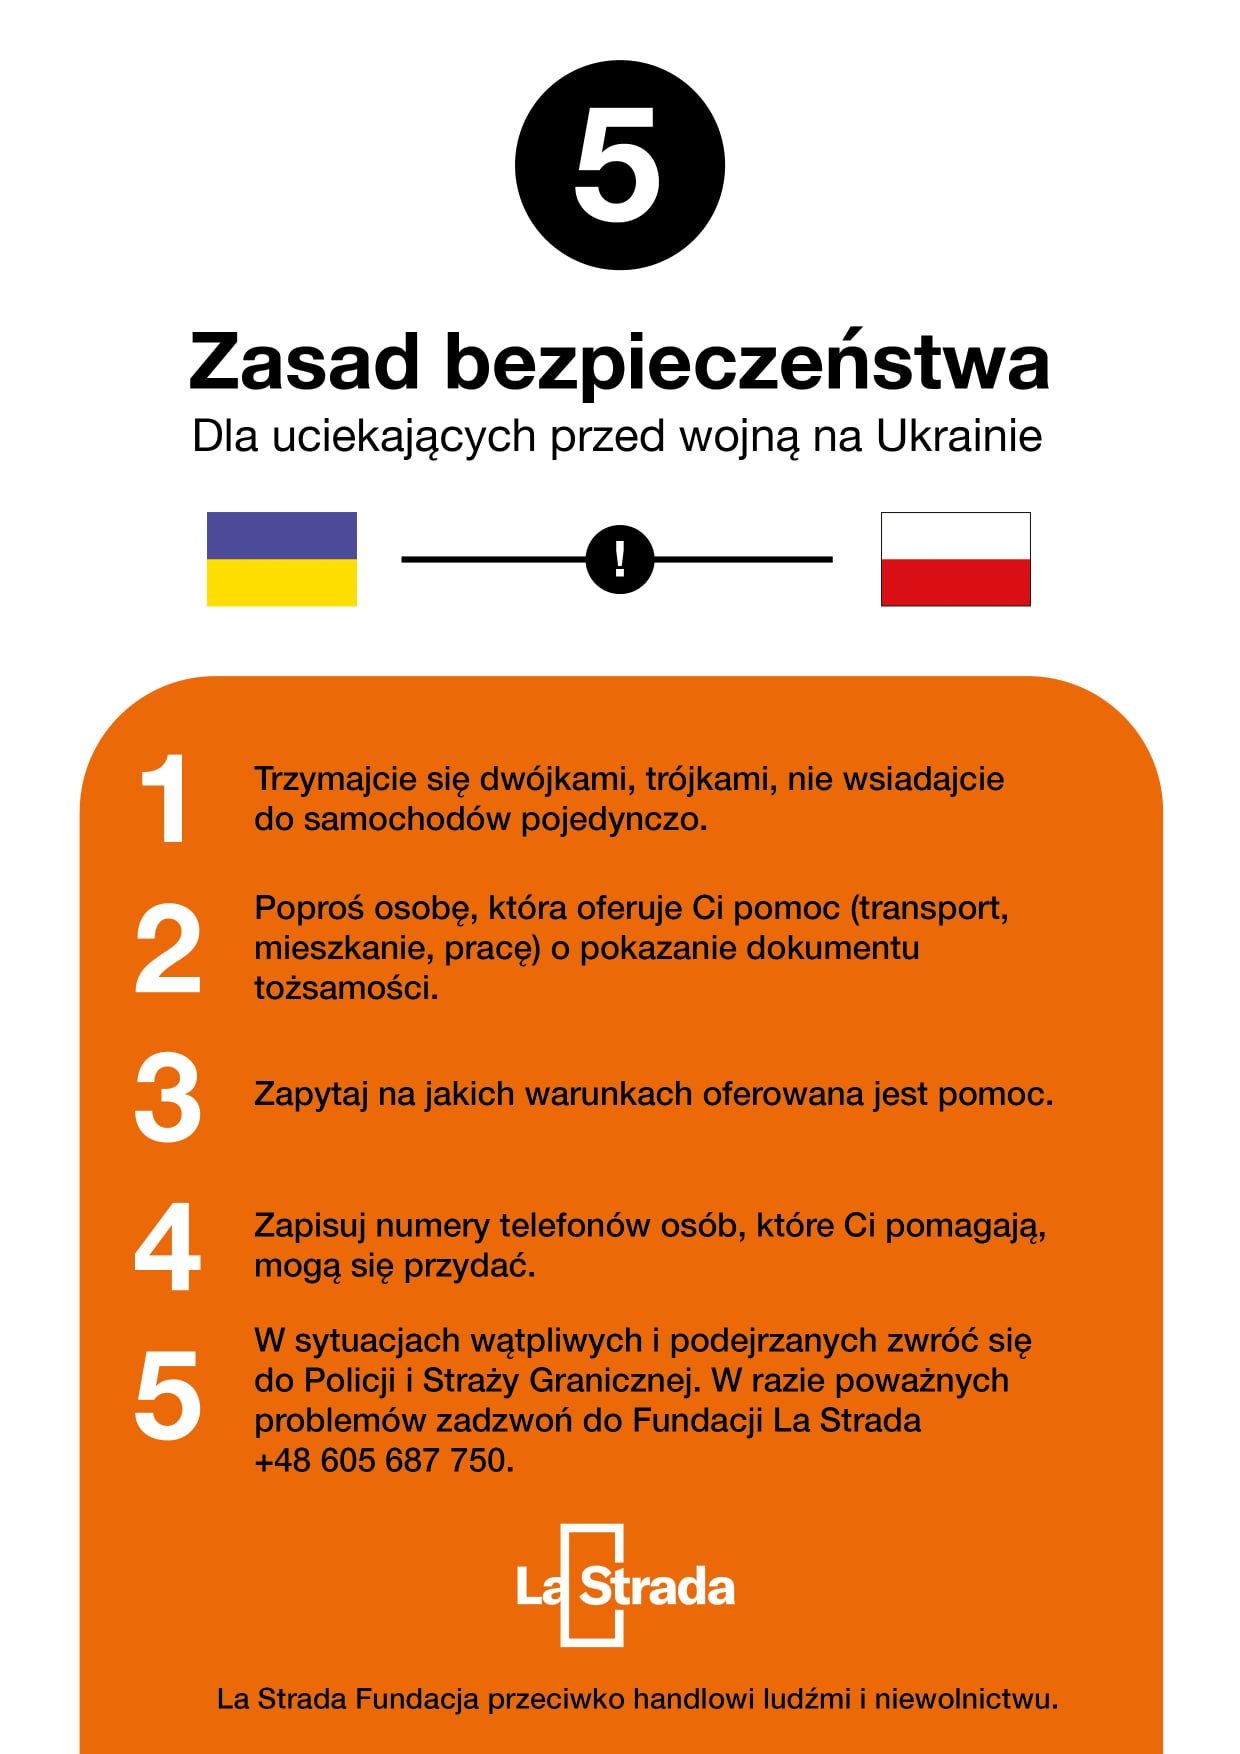 Ulotka w języku polskim z zasadami bezpieczeństwa dla uciekjących przed wojną 